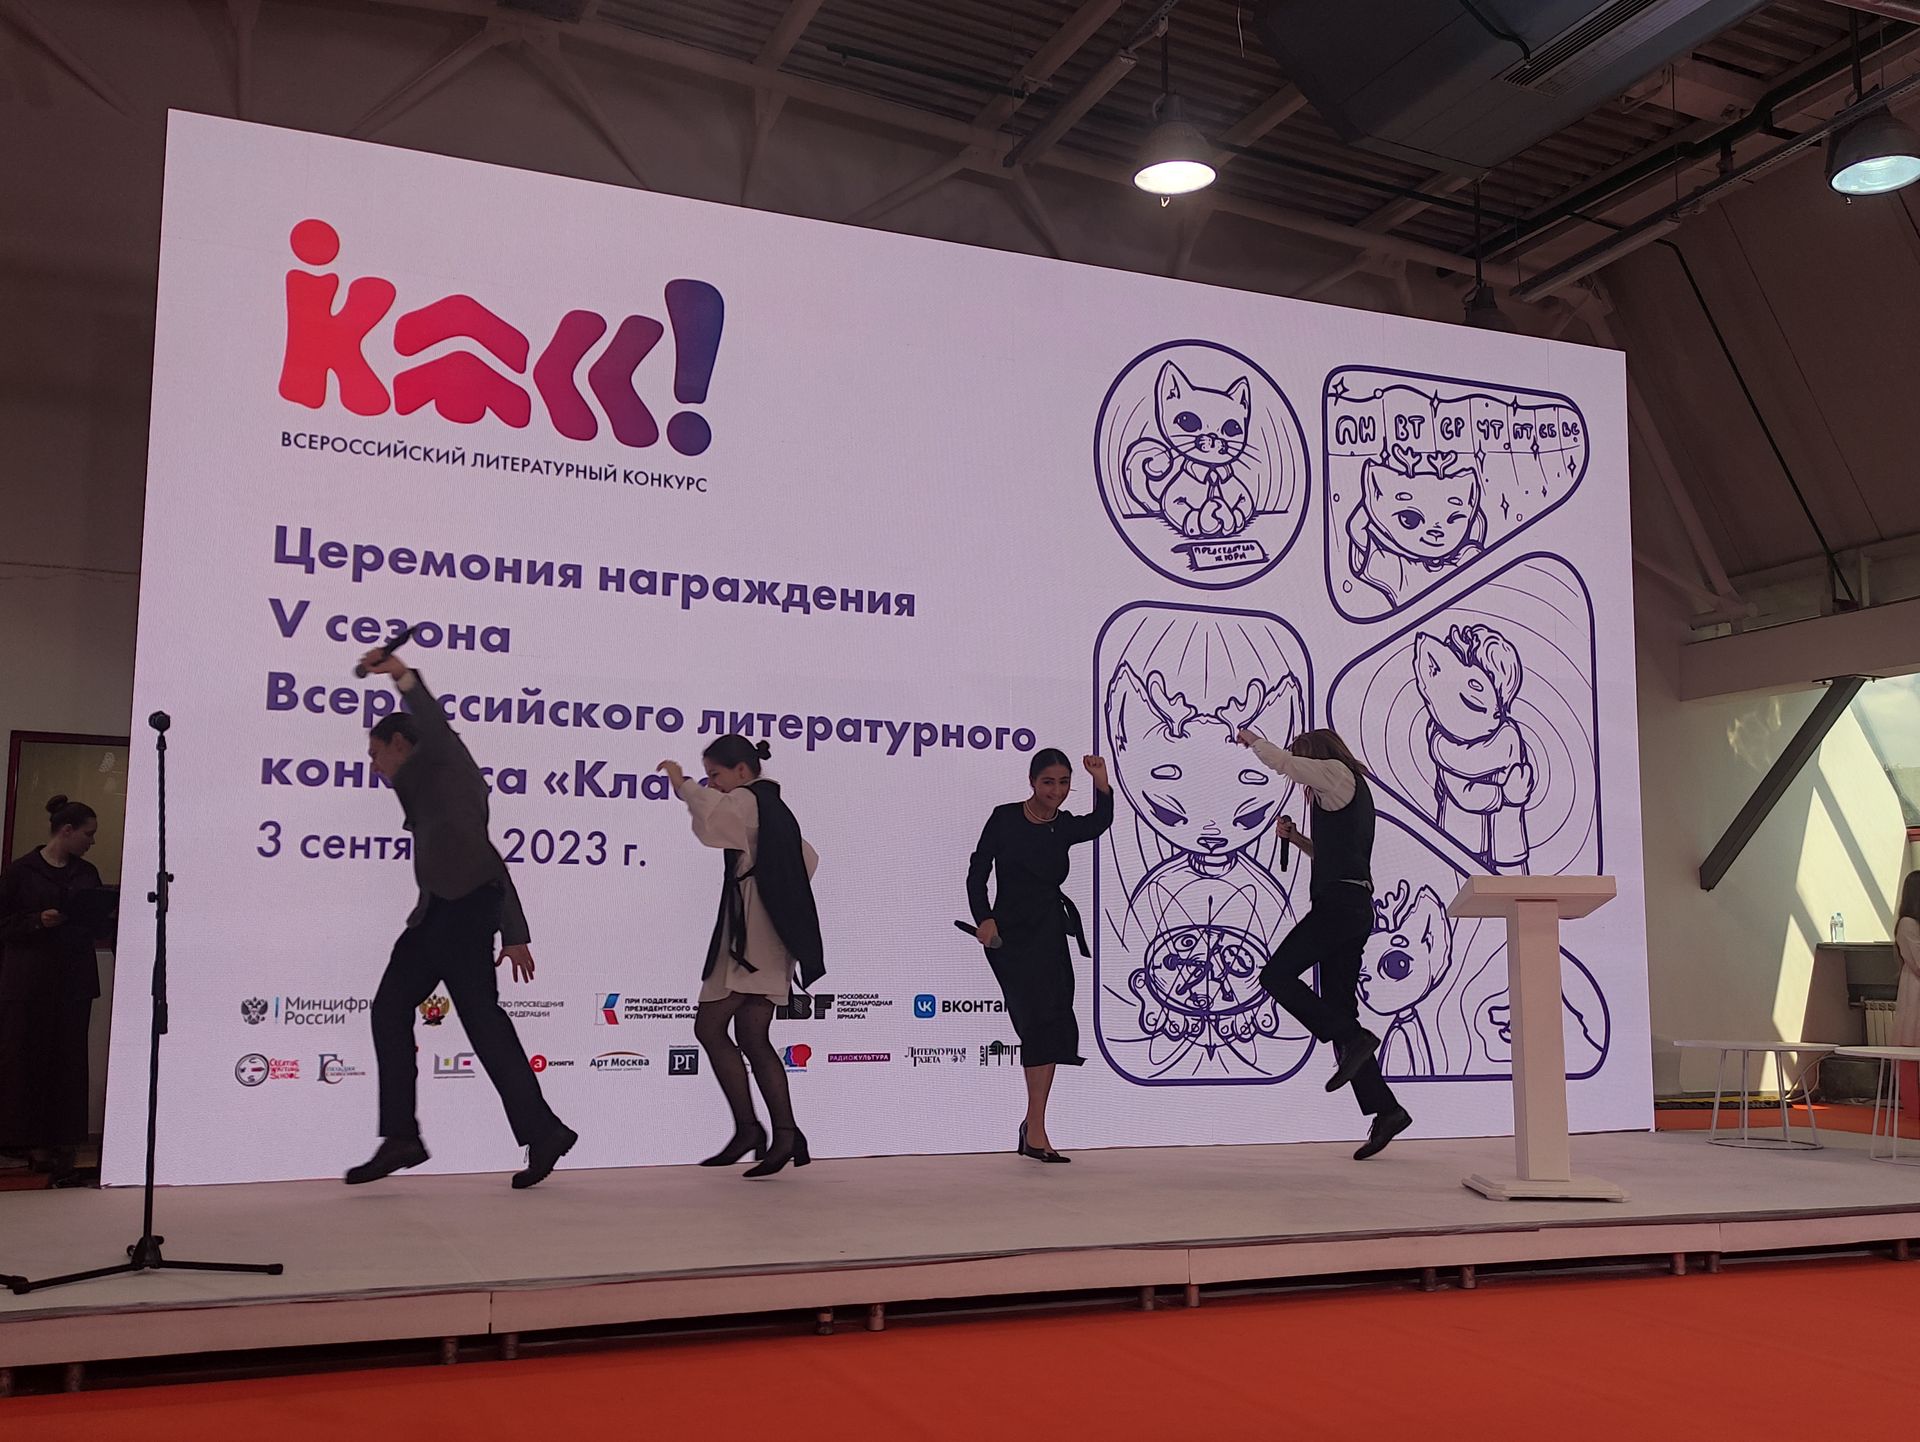 Пятый сезон Всероссийского литературного конкурса «Класс!» подвел итоги. Фото: Андрей Мягков